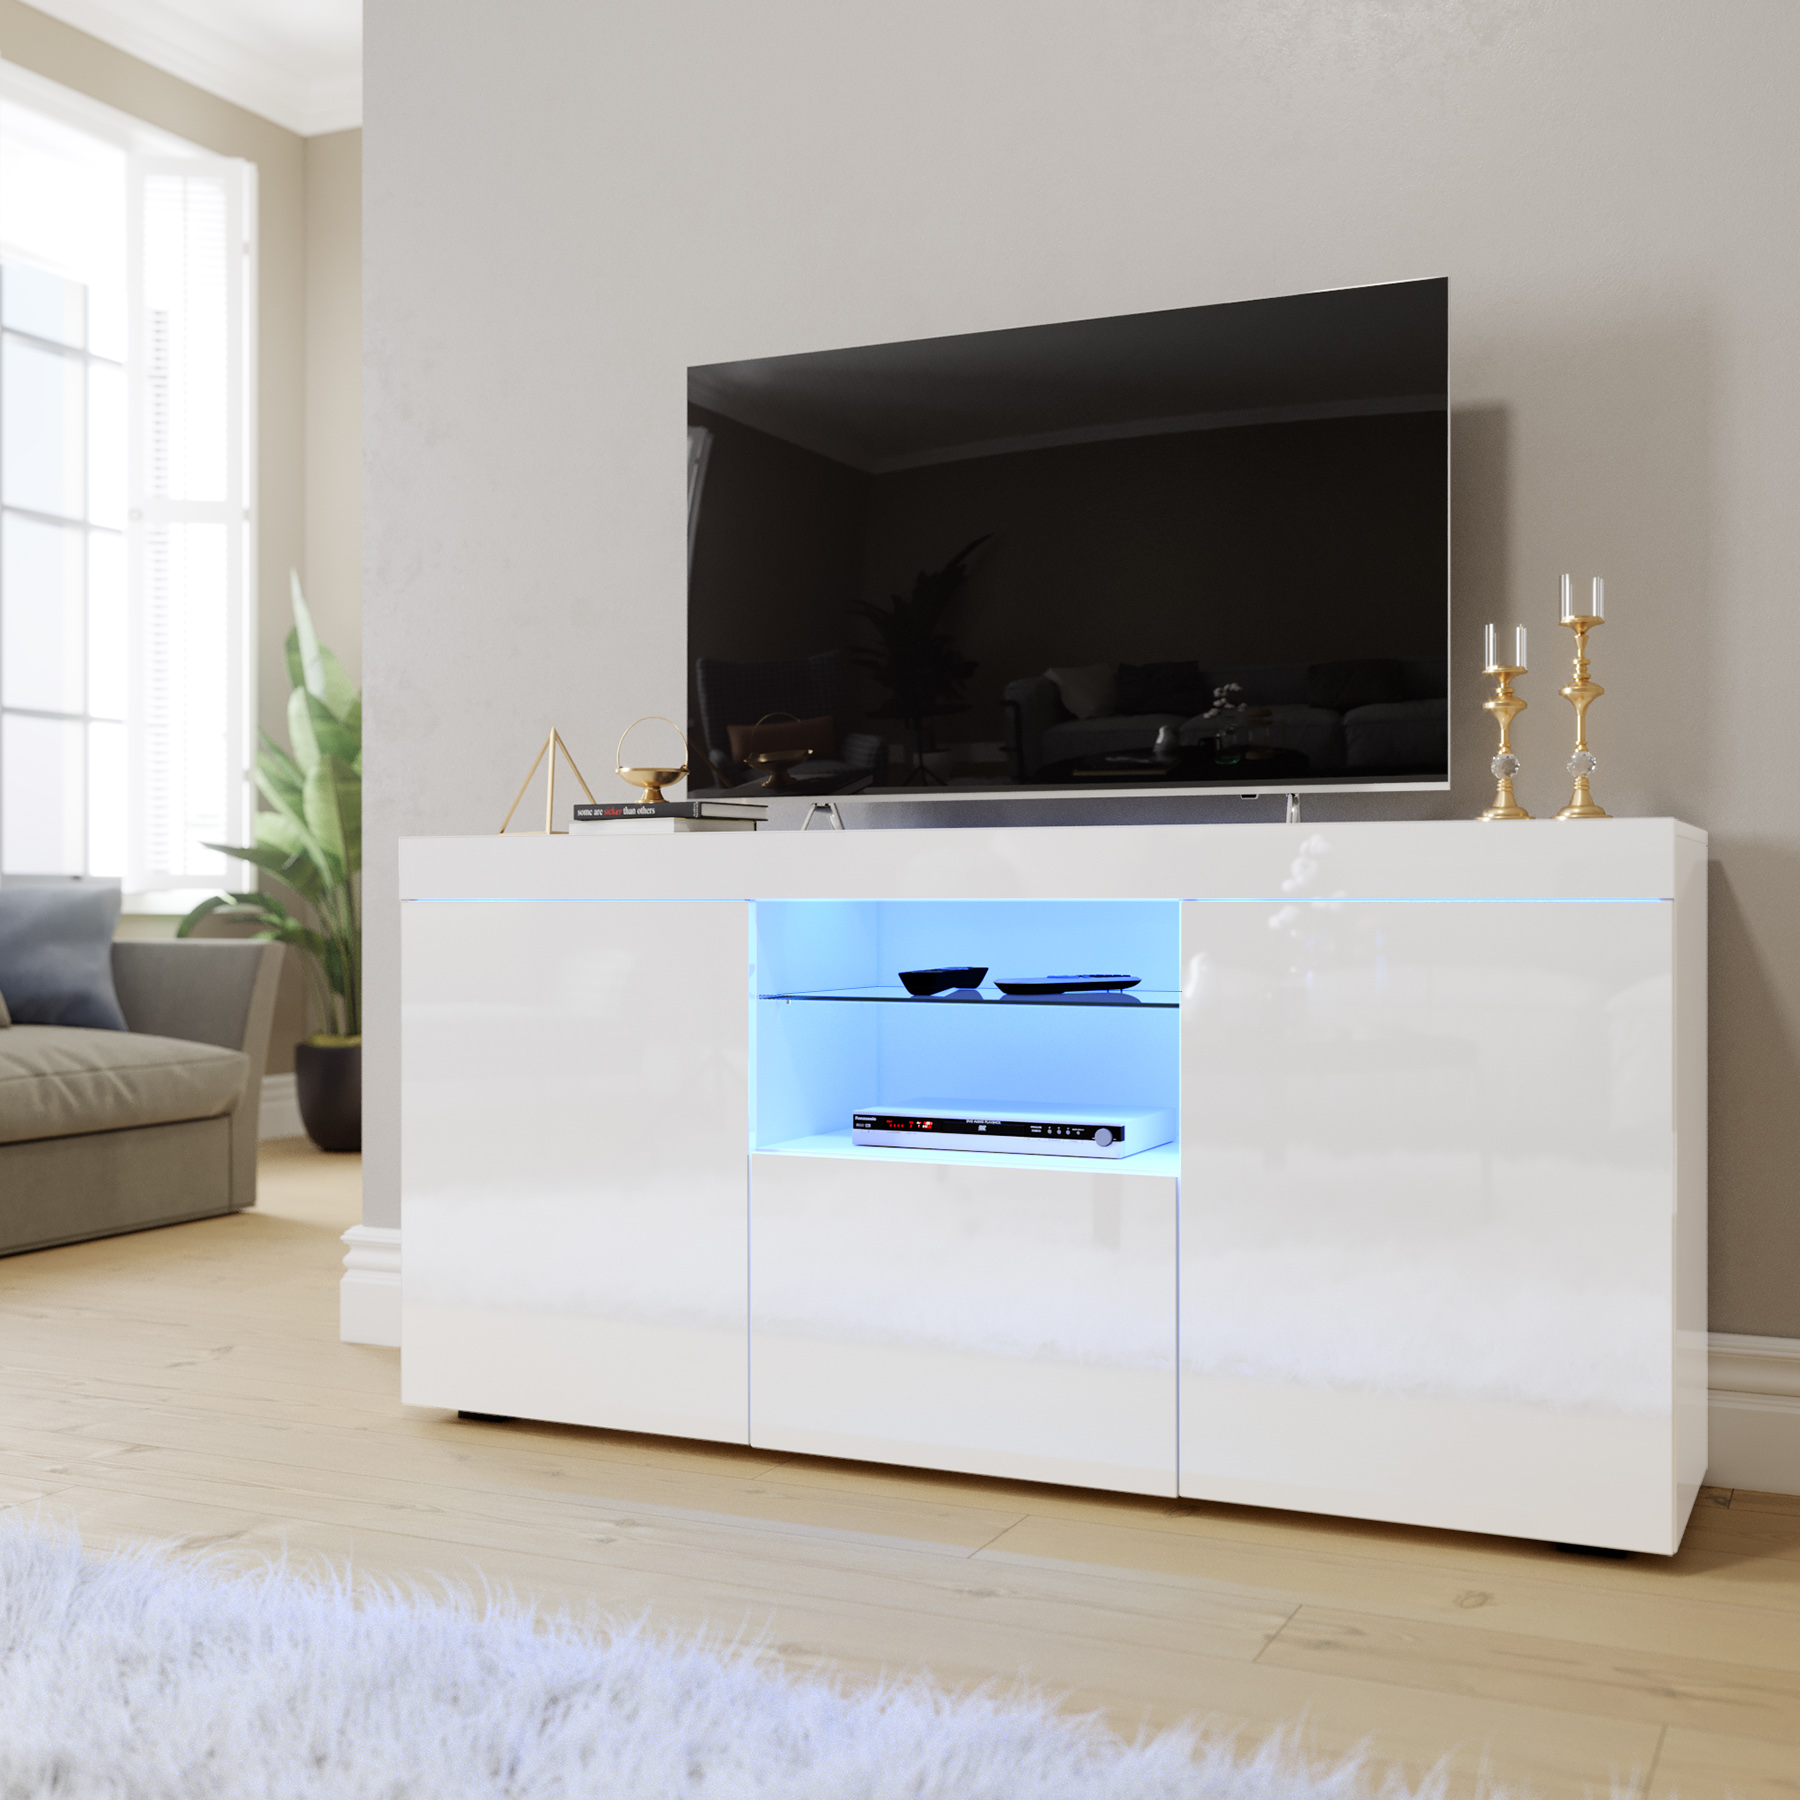 ELEGANT 1350mm TV Stand Unit MFC TV Cabinet High Gloss LED Lights Storage  Furniture Living Room Bedroom TV Stand for 32 40 43 50 55 60 65 inch 4k TV